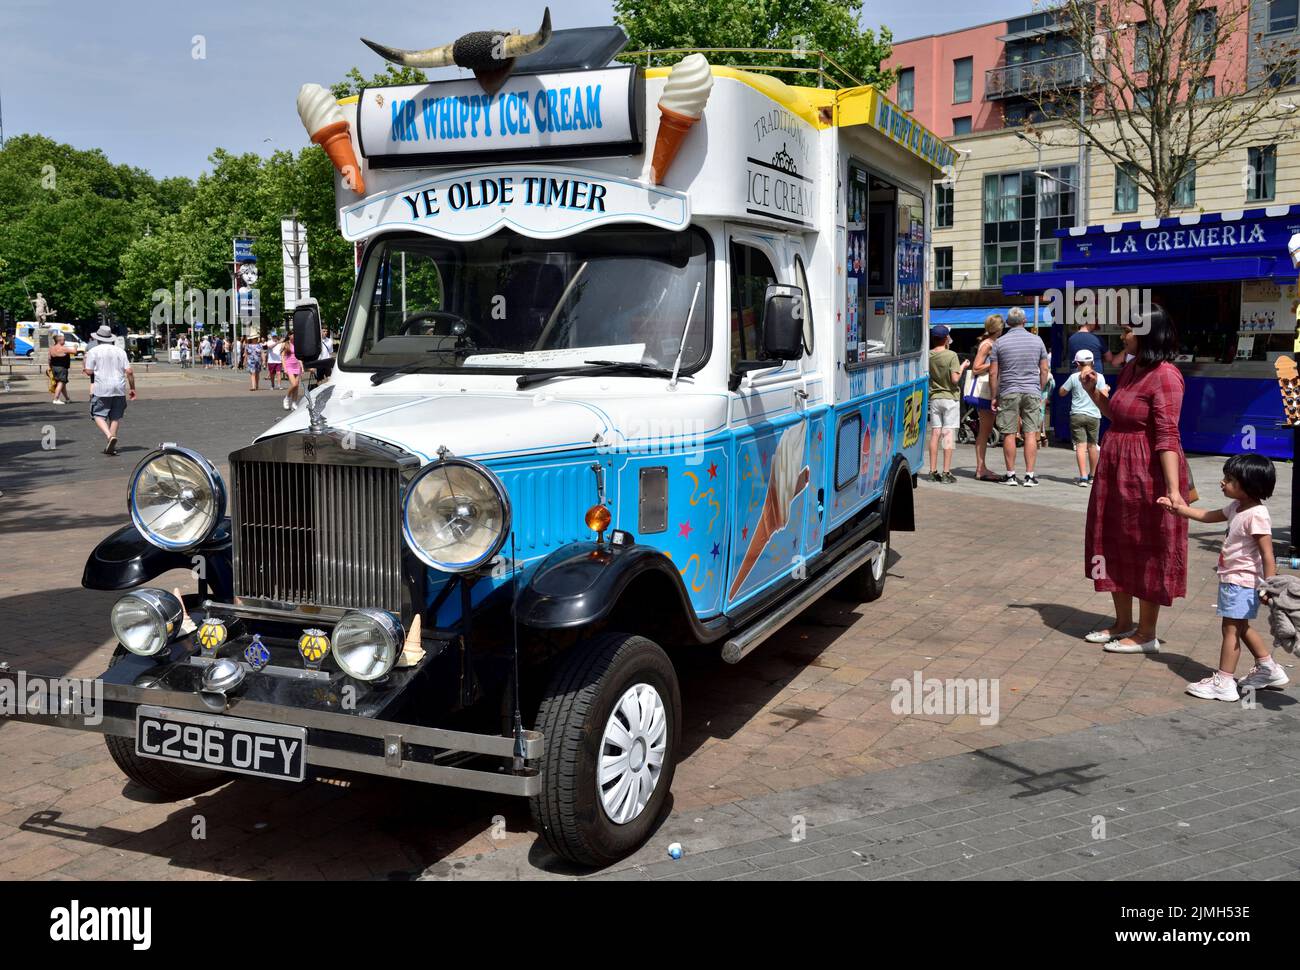 Rolls-Royce móvil tradicional Sr. whippy Ice Cream van en el centro de Bristol durante el caluroso festival del día de verano Foto de stock